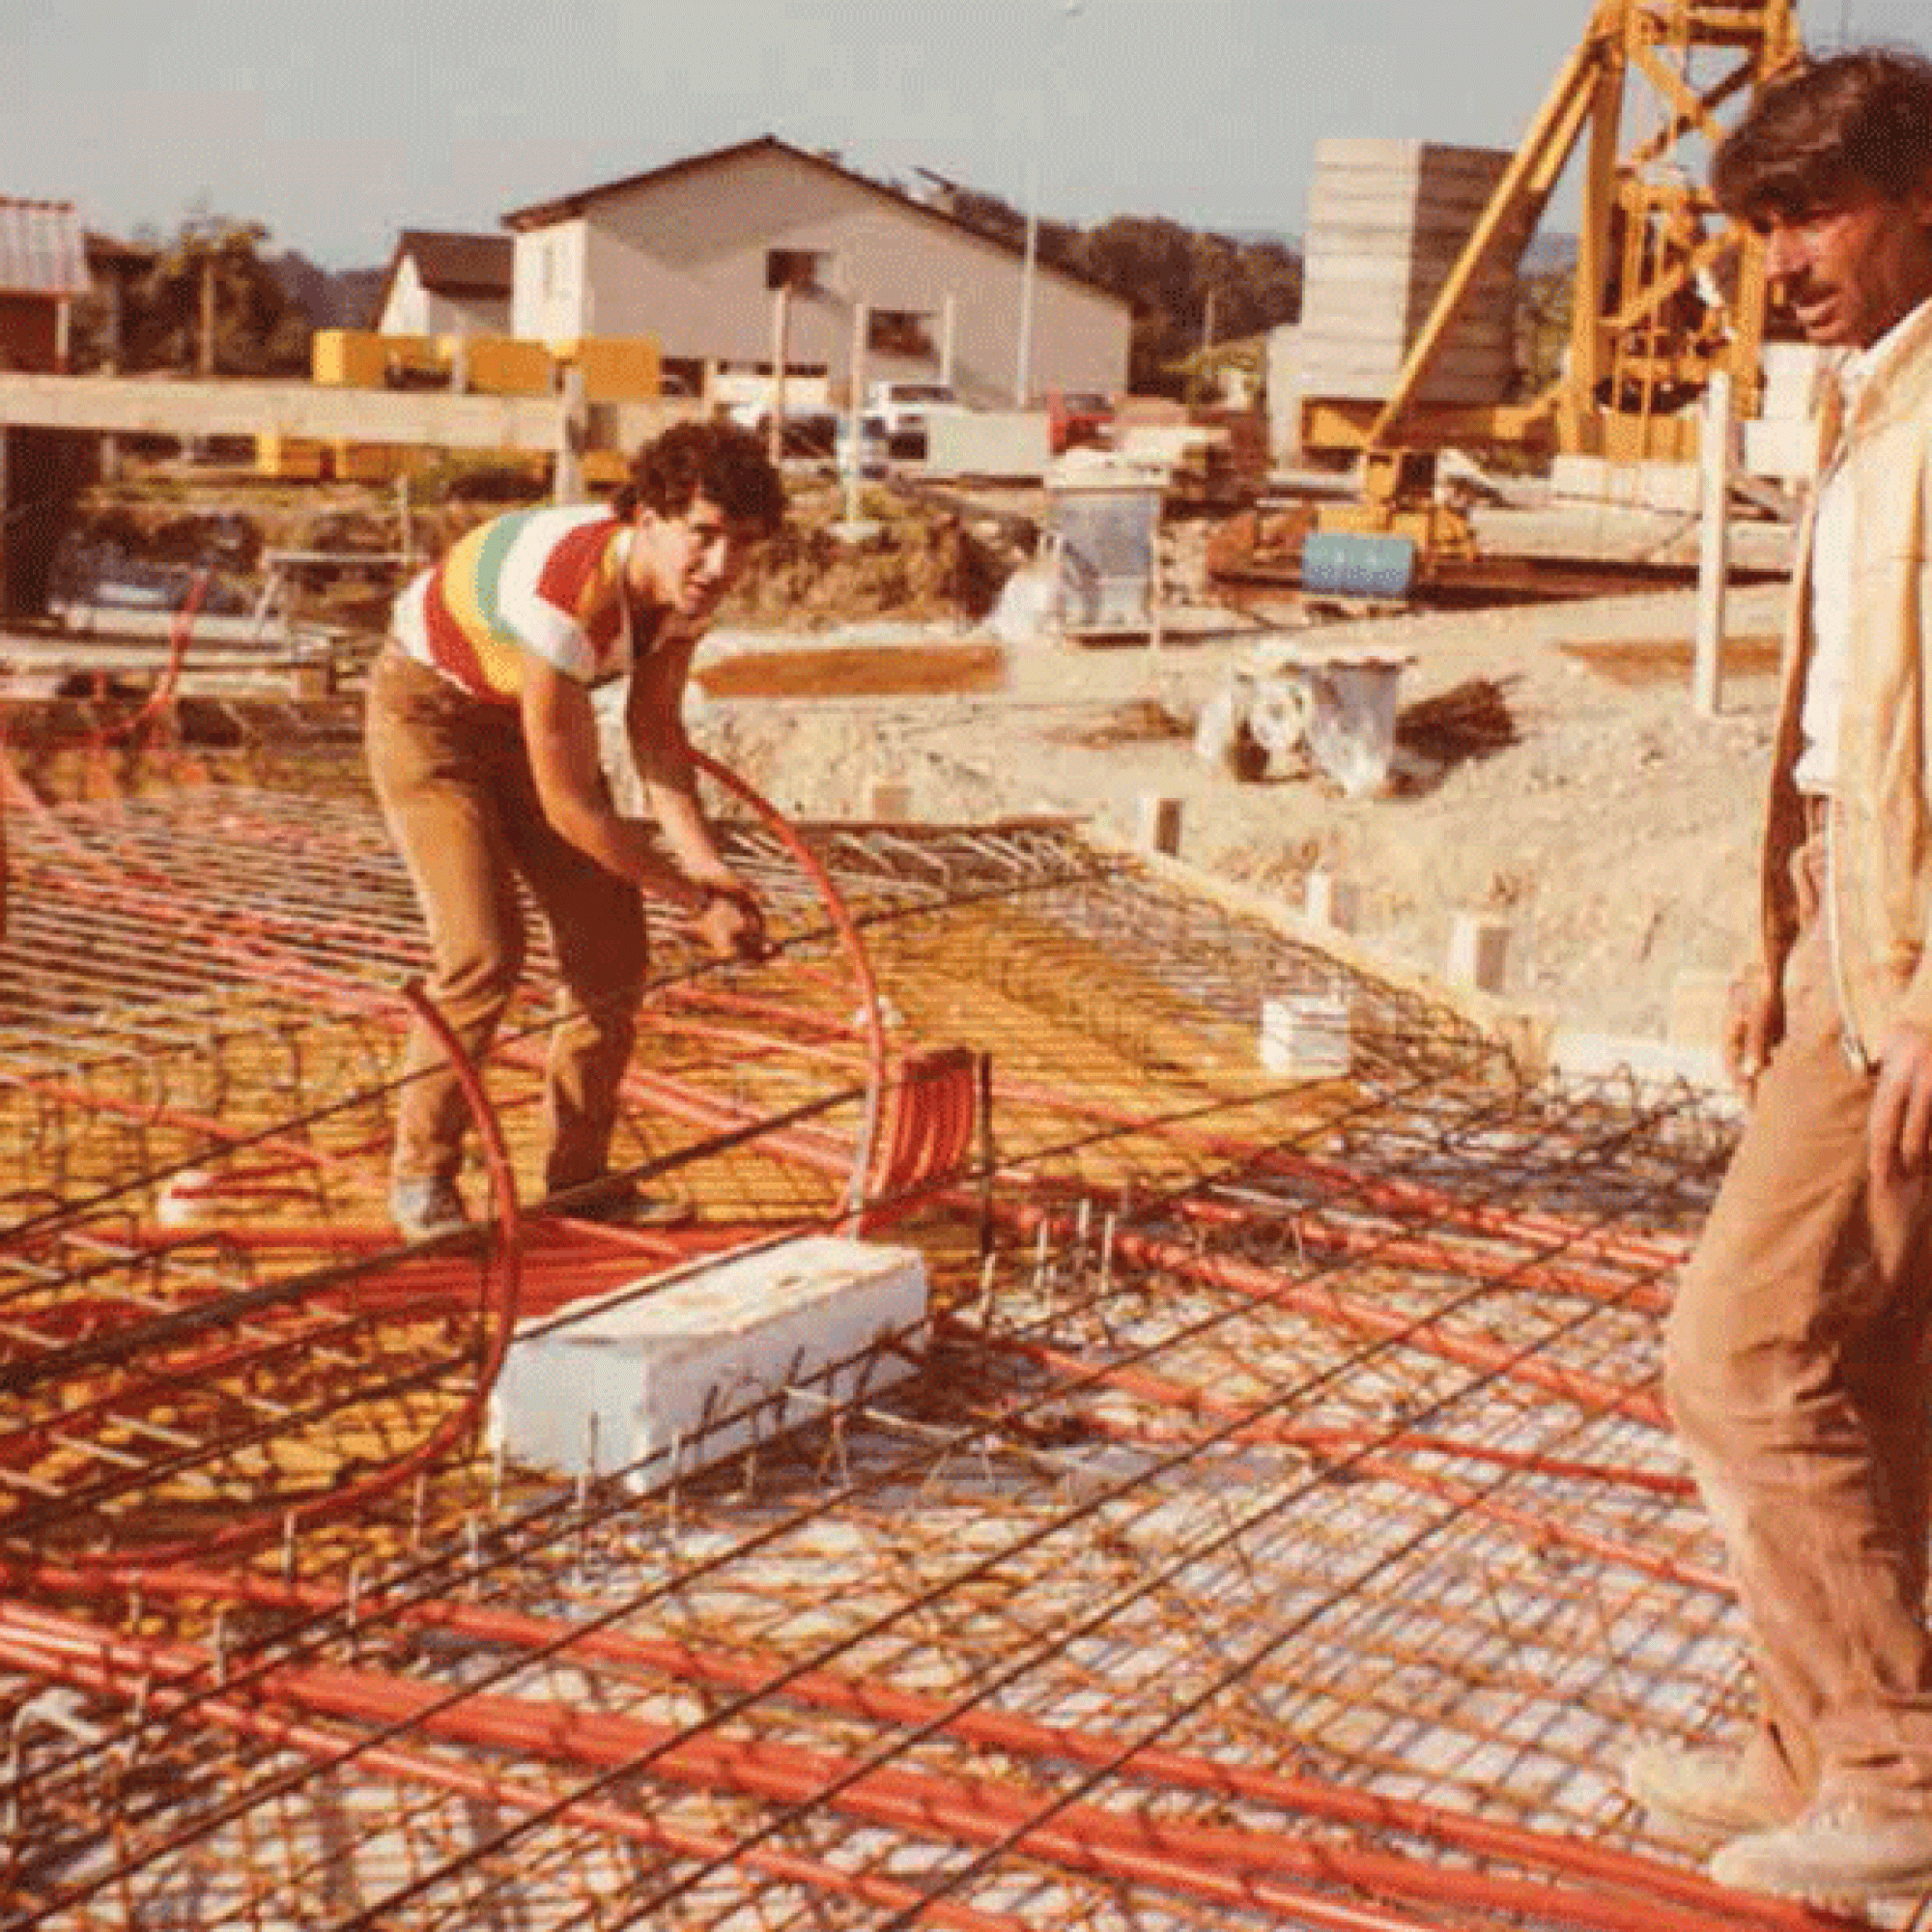 Der Polier Vincenzo Giarraputo aus Sizilien (rechts) im Sommer 1984 auf der Baustelle eines Wohnhauses in Wil. (zvg)